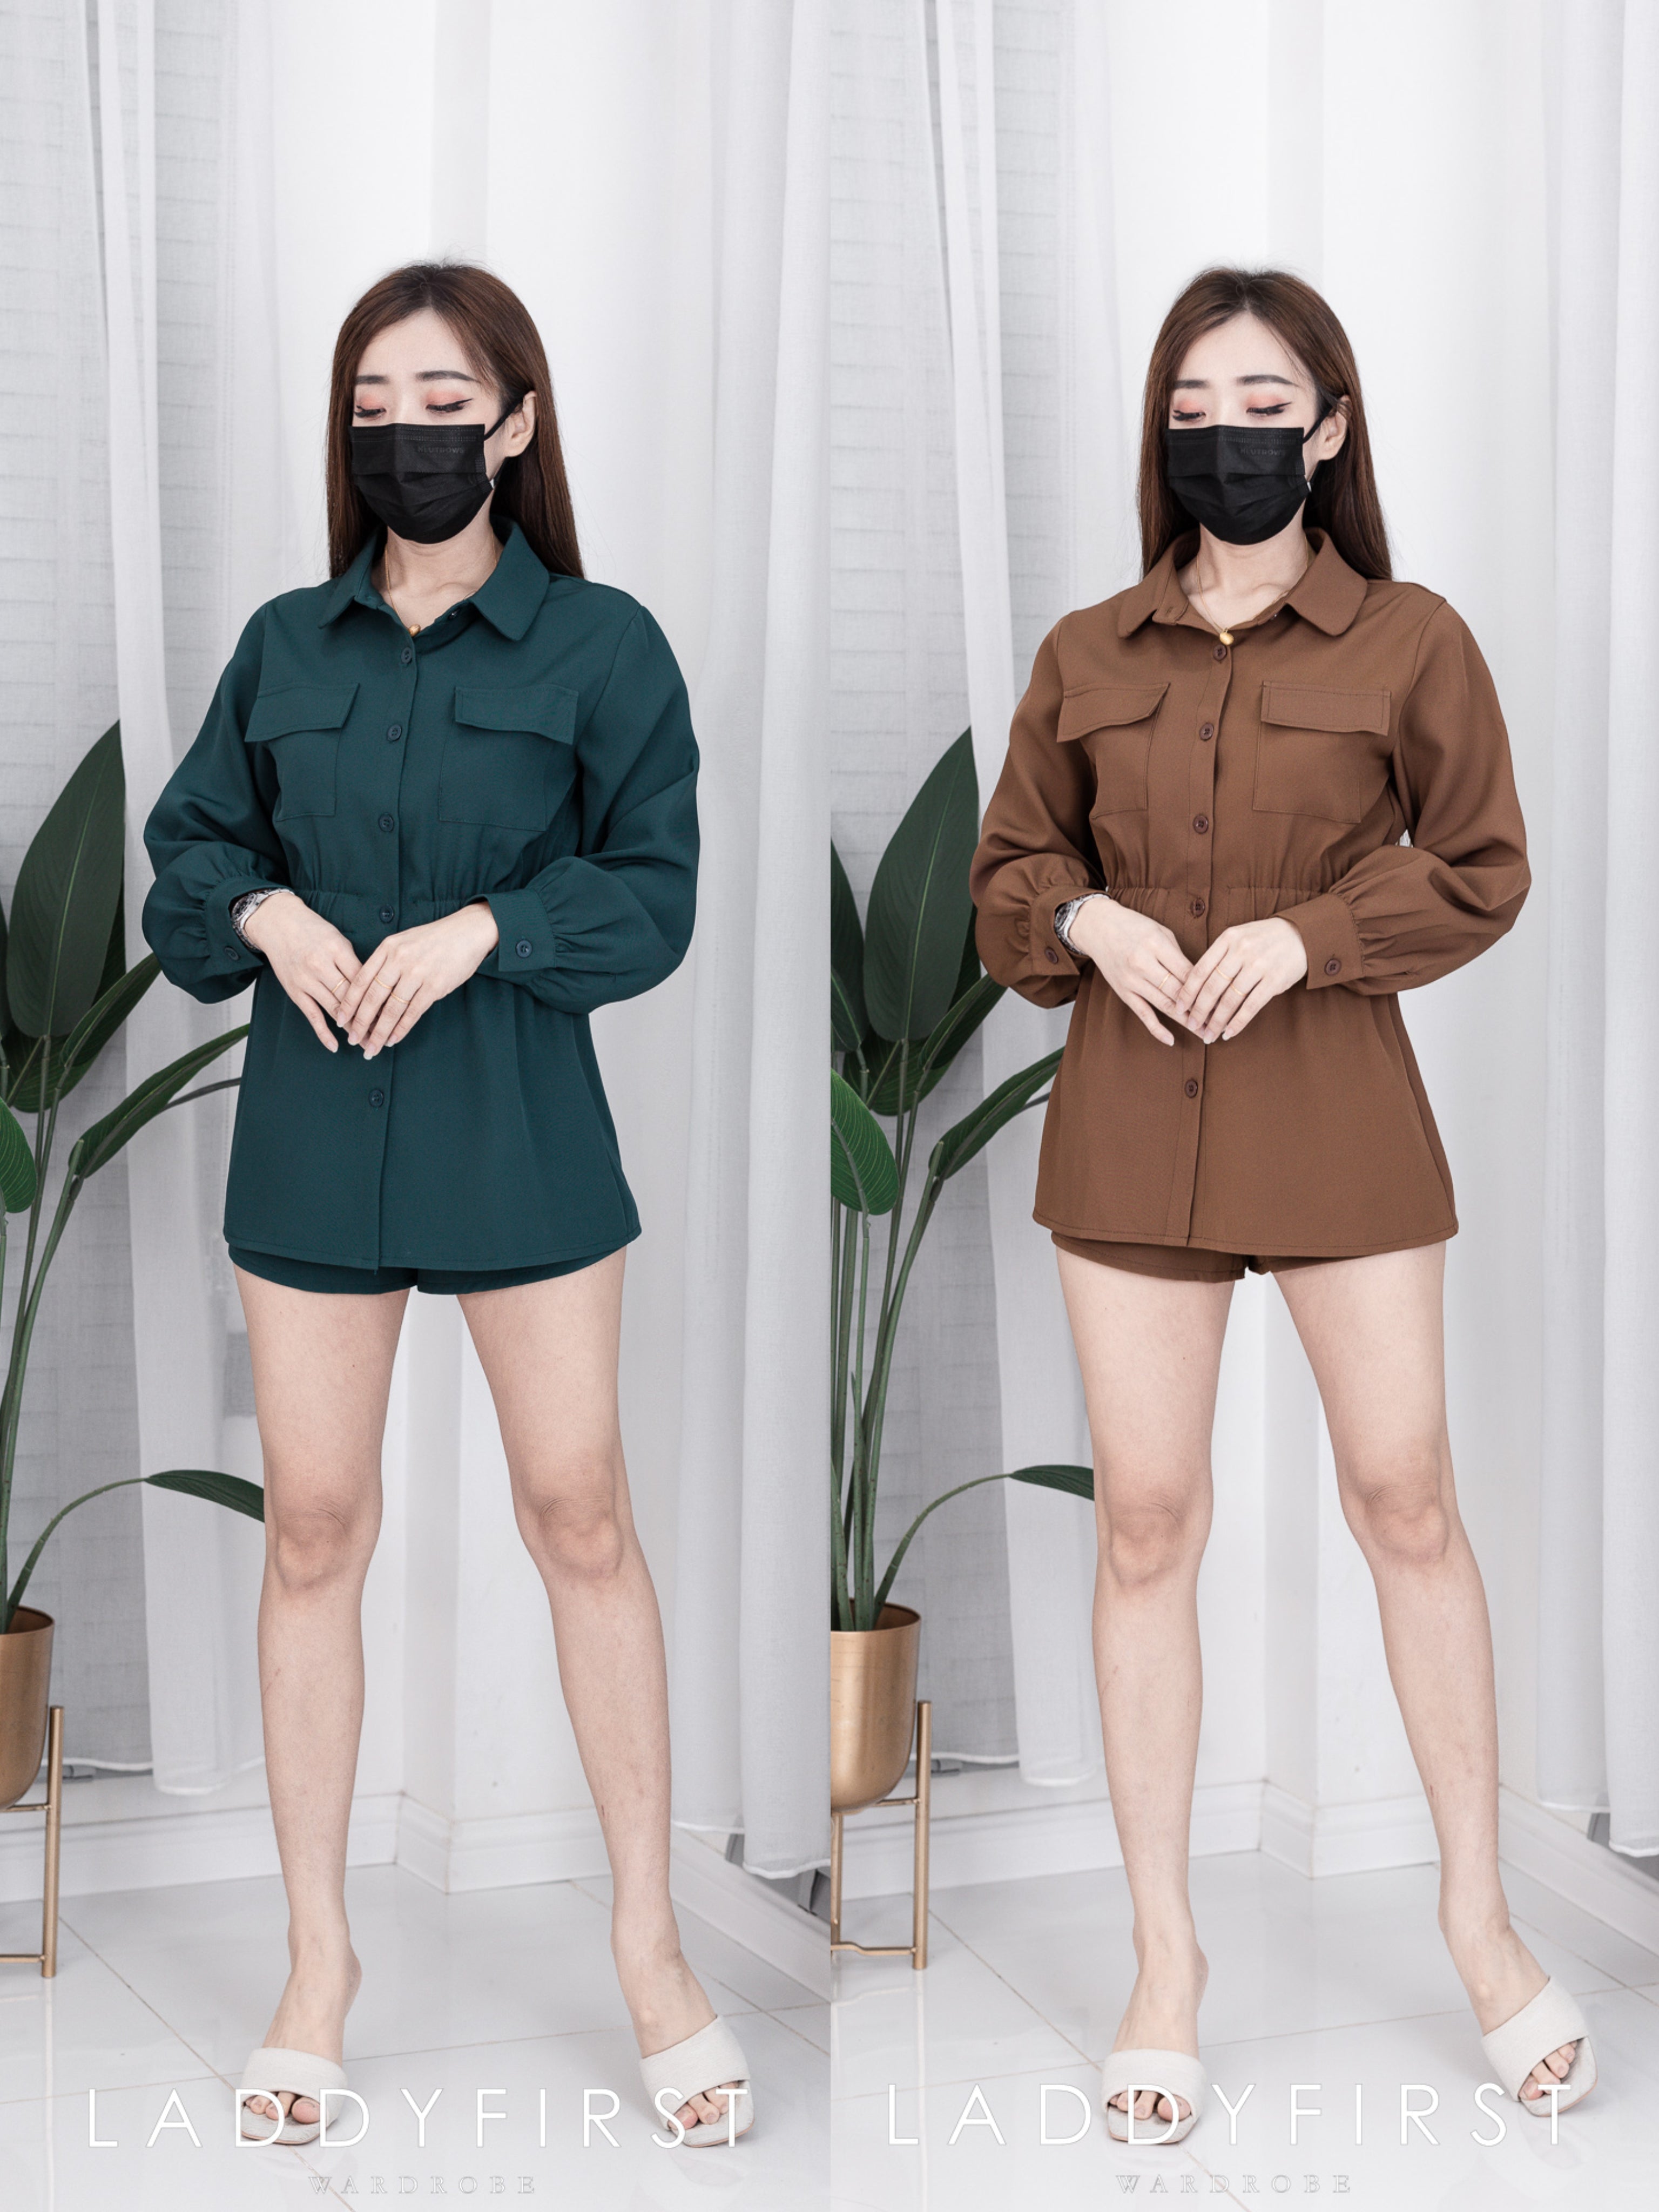 【SS4422072】两件式韩版西装套装 长袖上衣➕高腰短裤